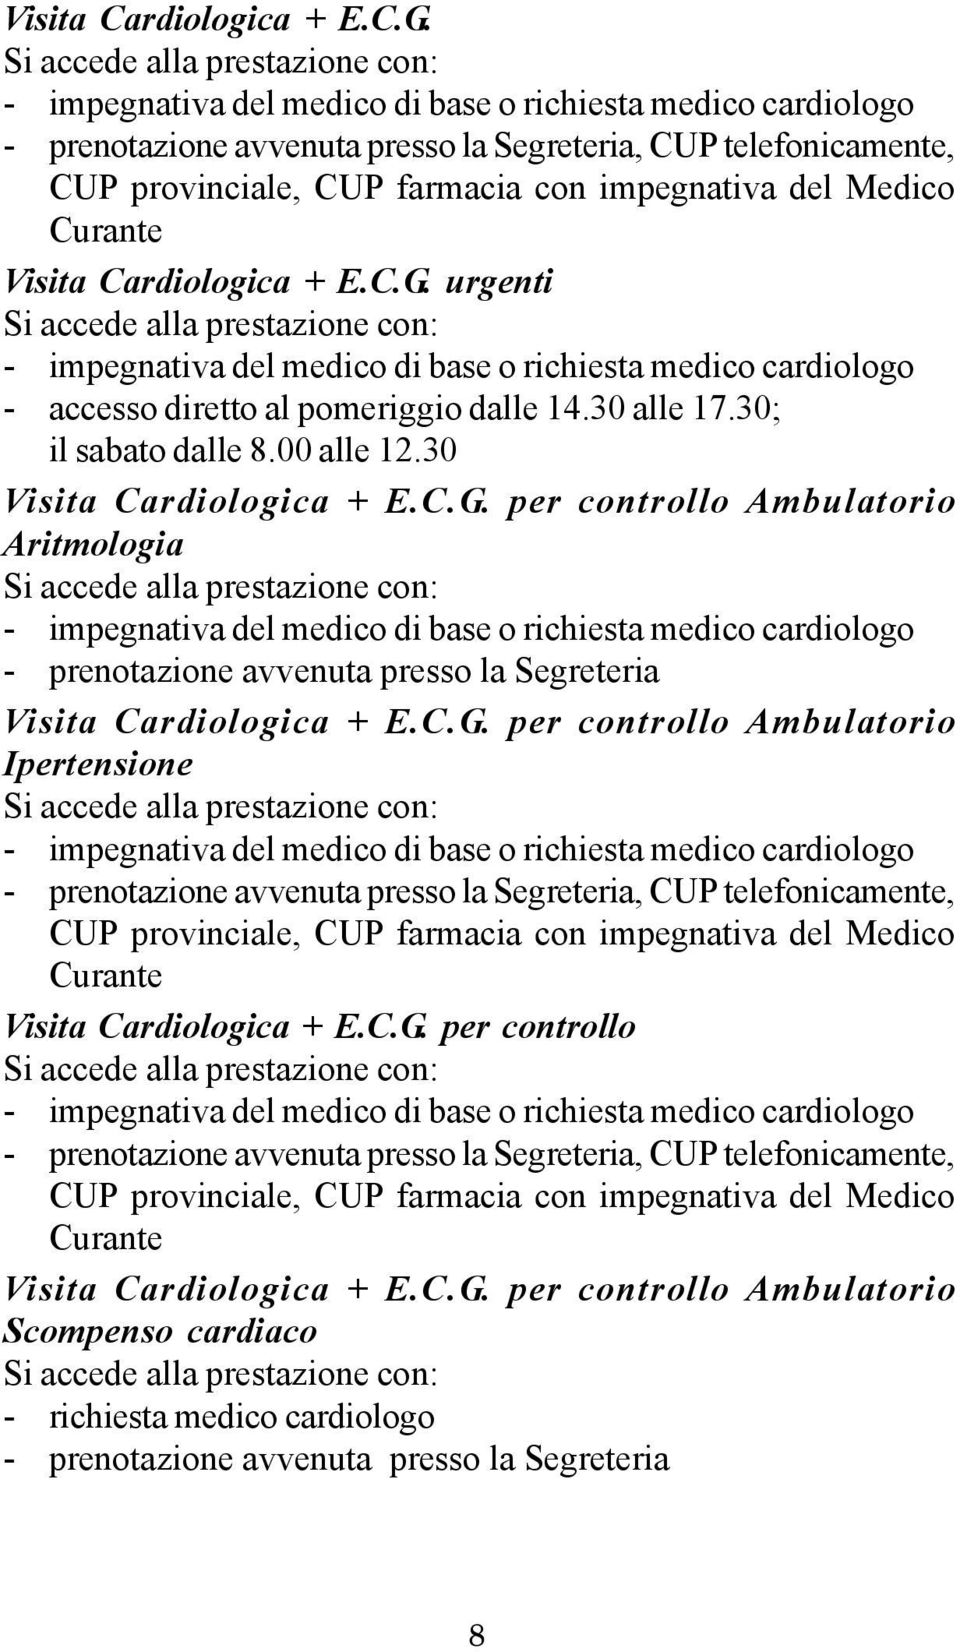 per controllo Ambulatorio Aritmologia Visita Cardiologica + E.C.G.